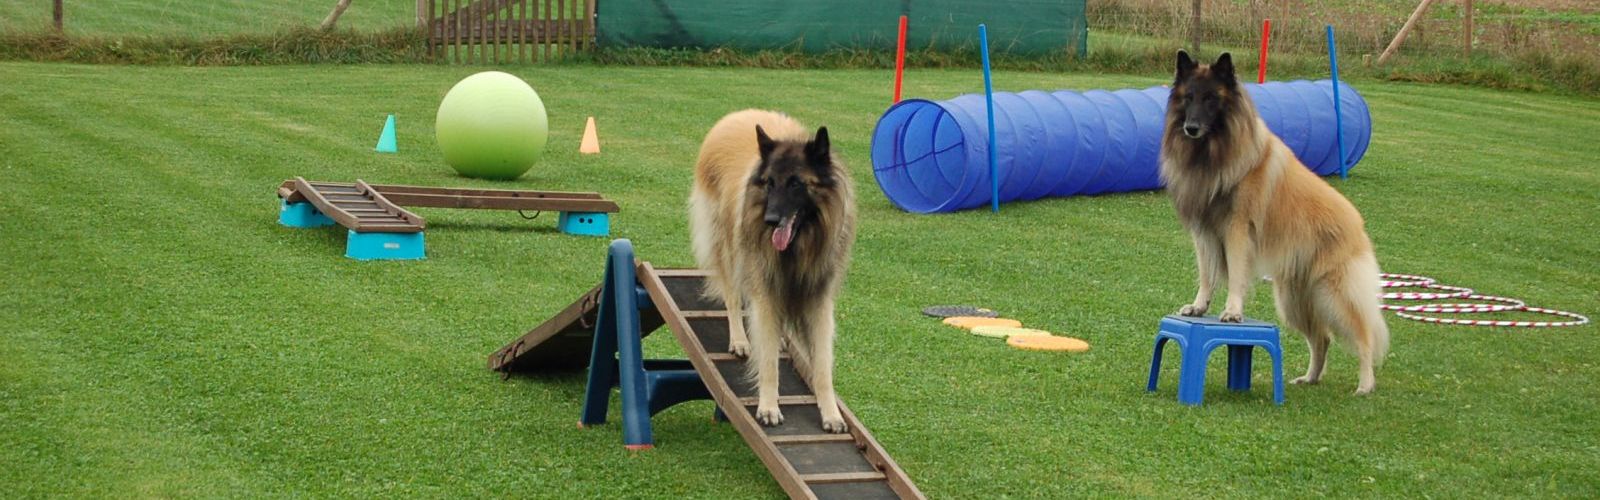 Hundeschule, Ausbildung und Coaching für Hunde